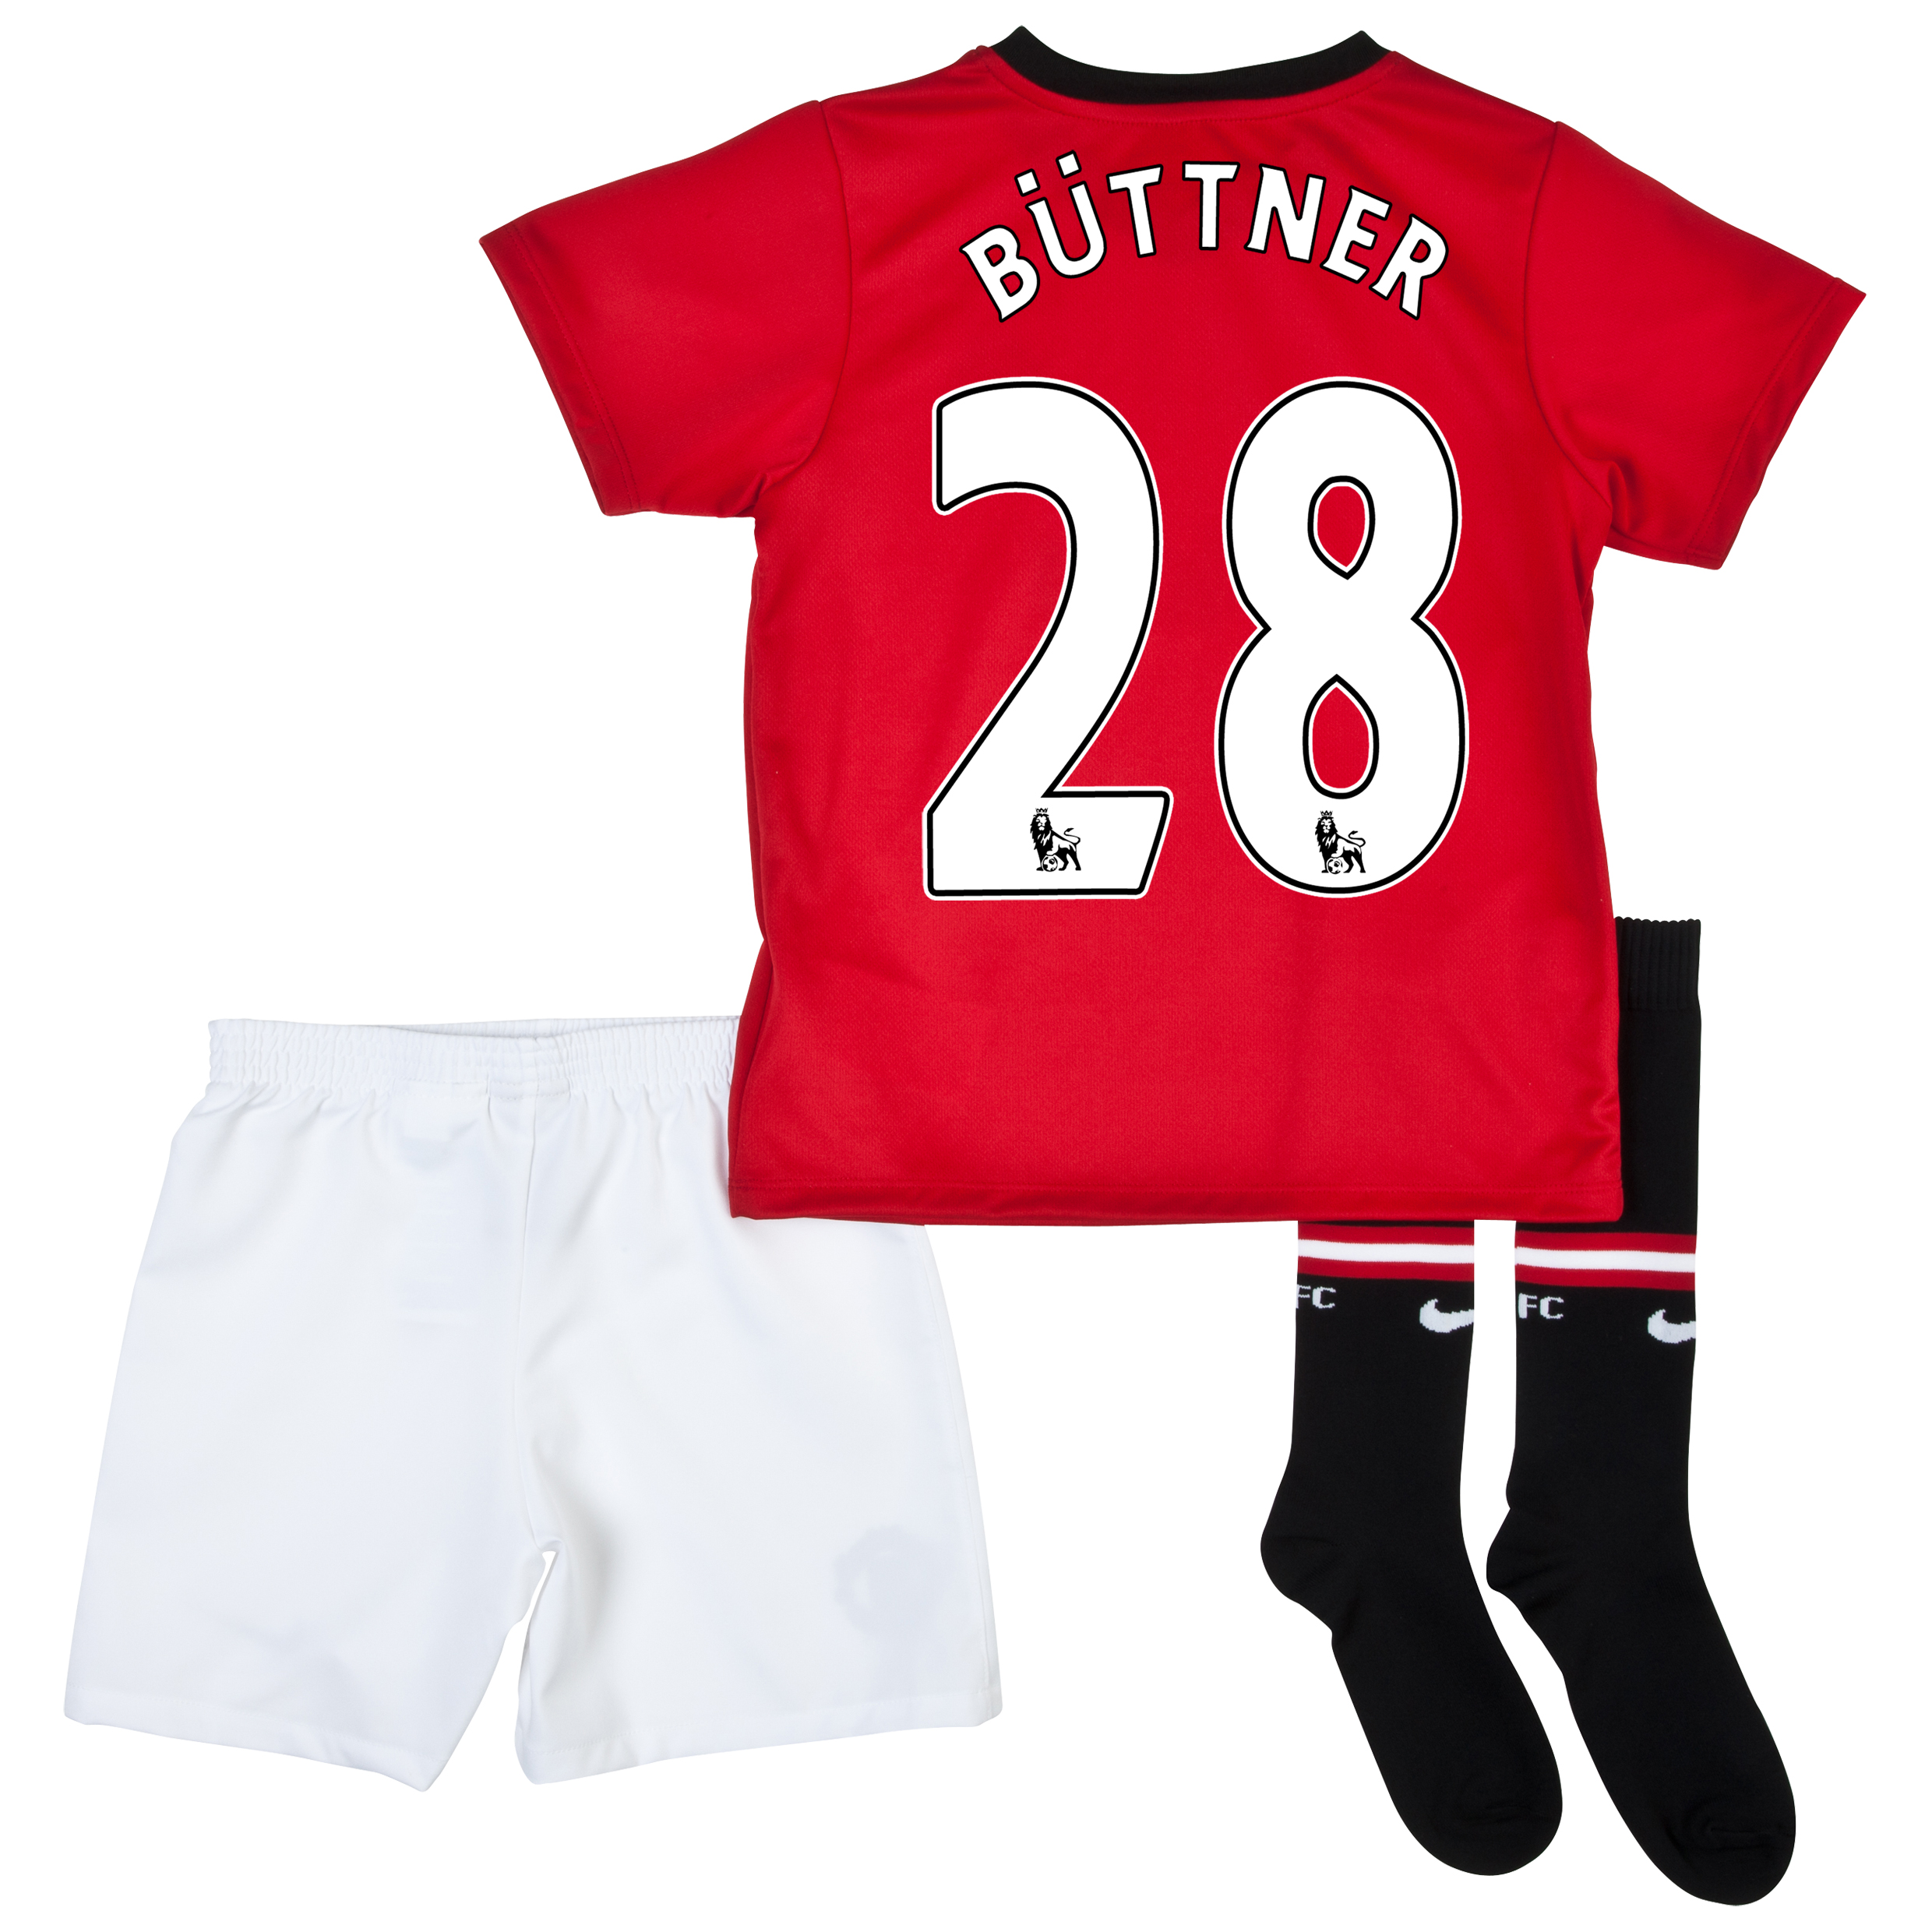 Manchester United Home Kit 2013/14 - Little Boys with Büttner 28 printing